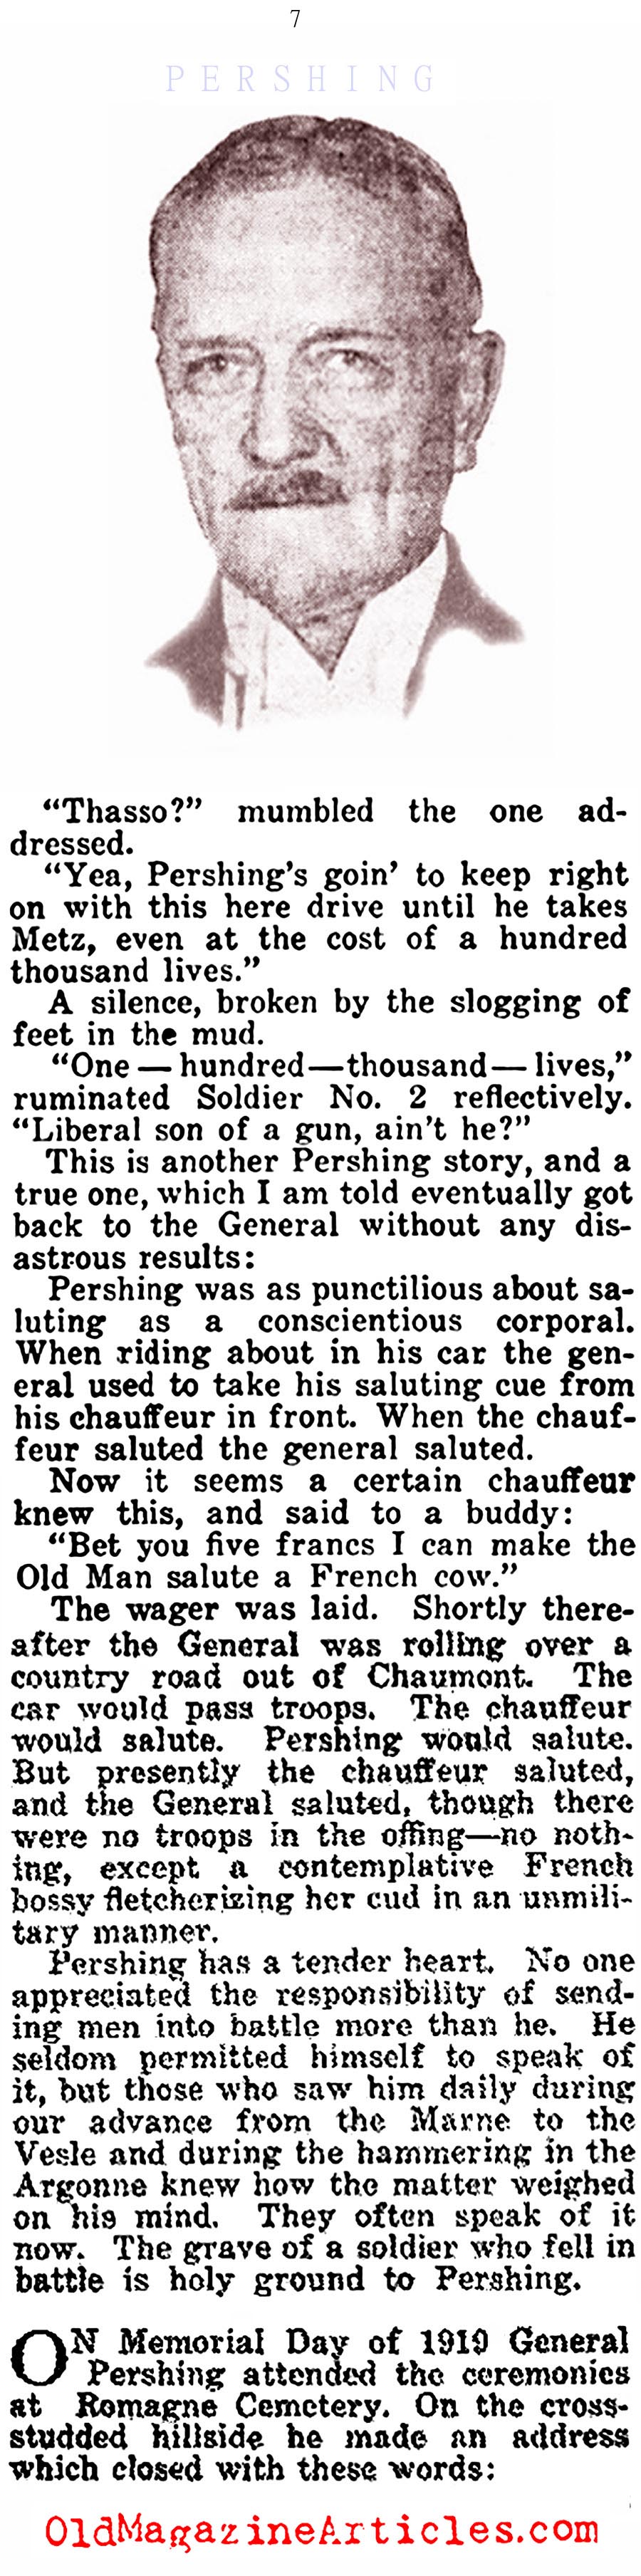 General John J. Pershing (American Legion Weekly, 1924)